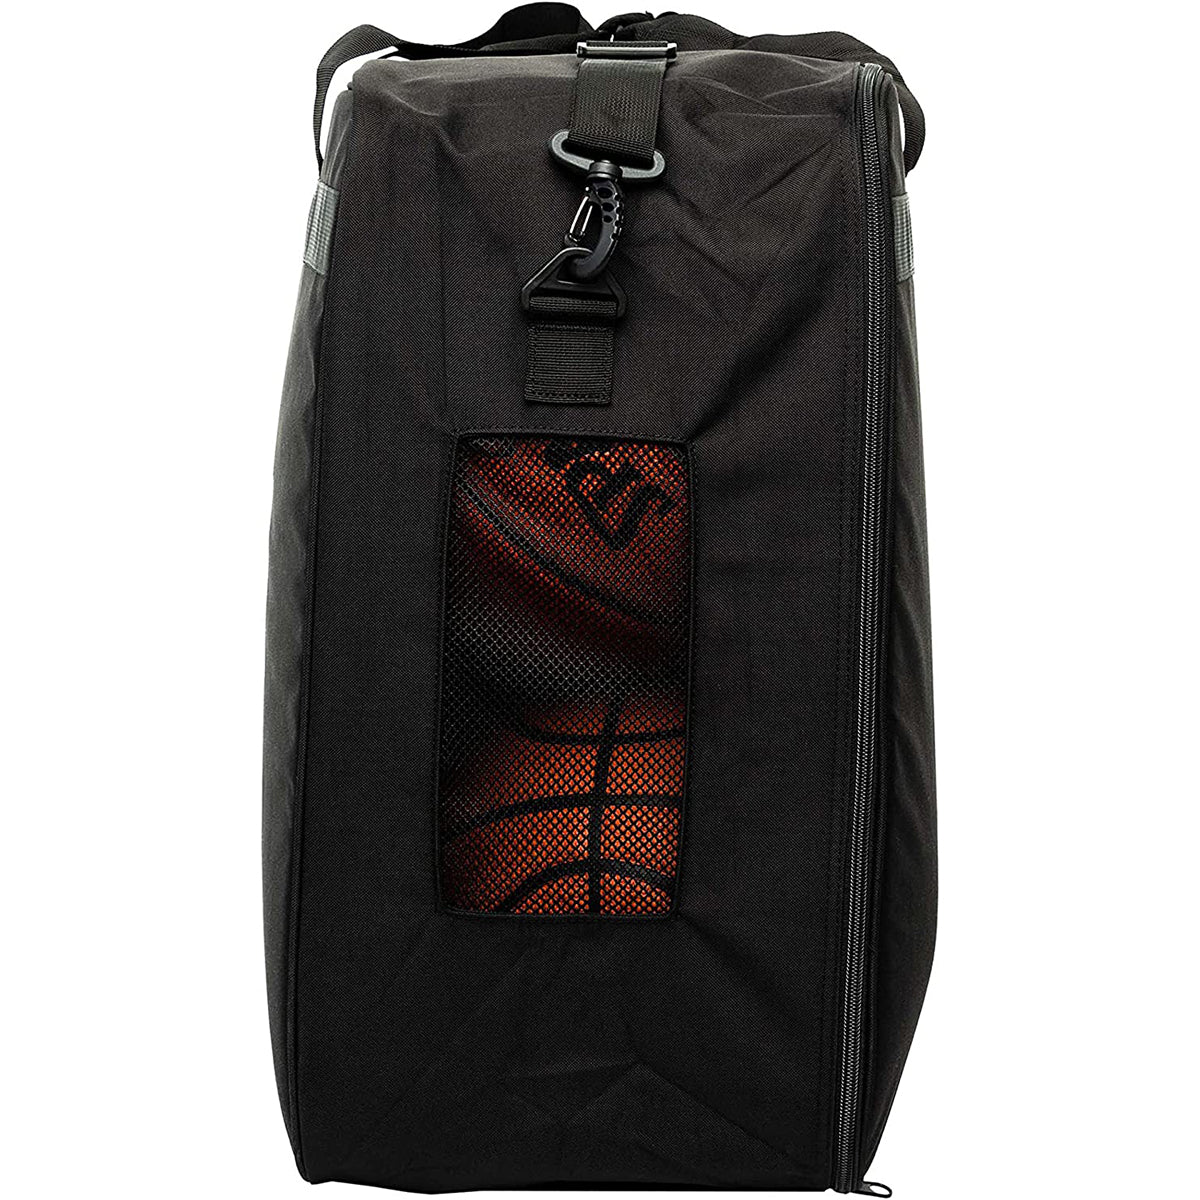 Spalding NBA Leather Messenger Bag